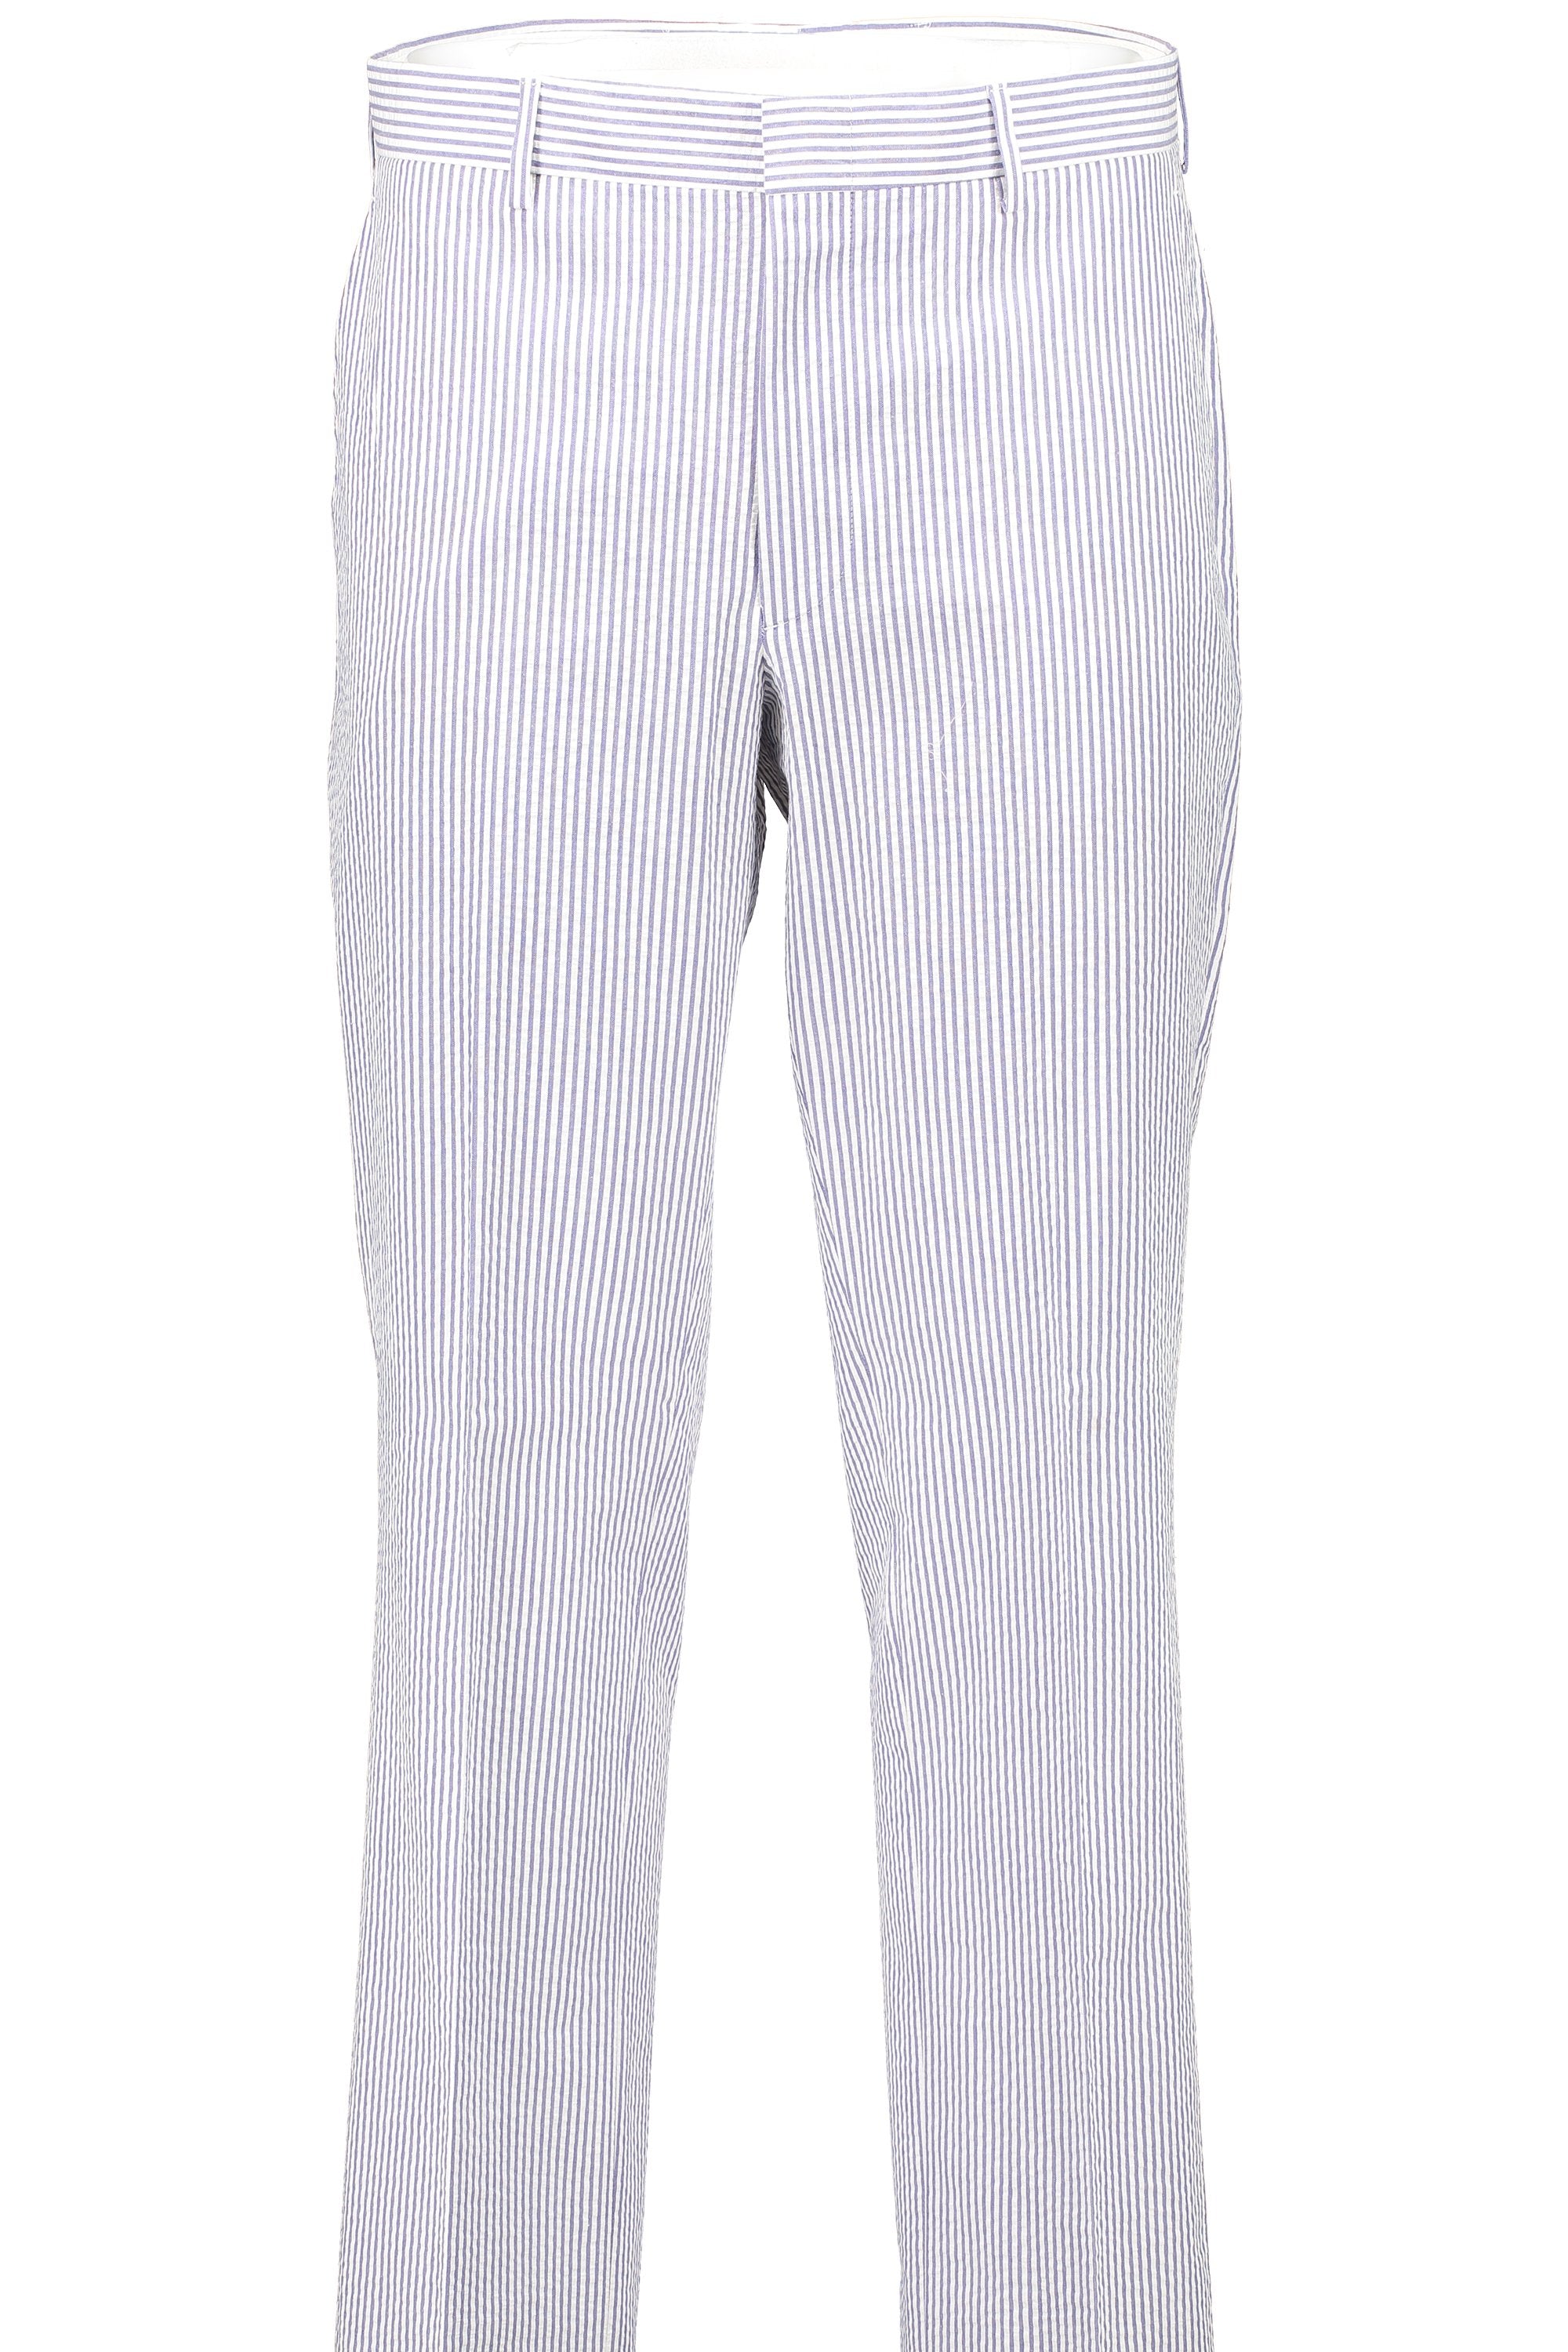 Men's Flat Front Pant - Suit Separate - Classic Cut - BLUE SEERSUCKER -  100% COTTON